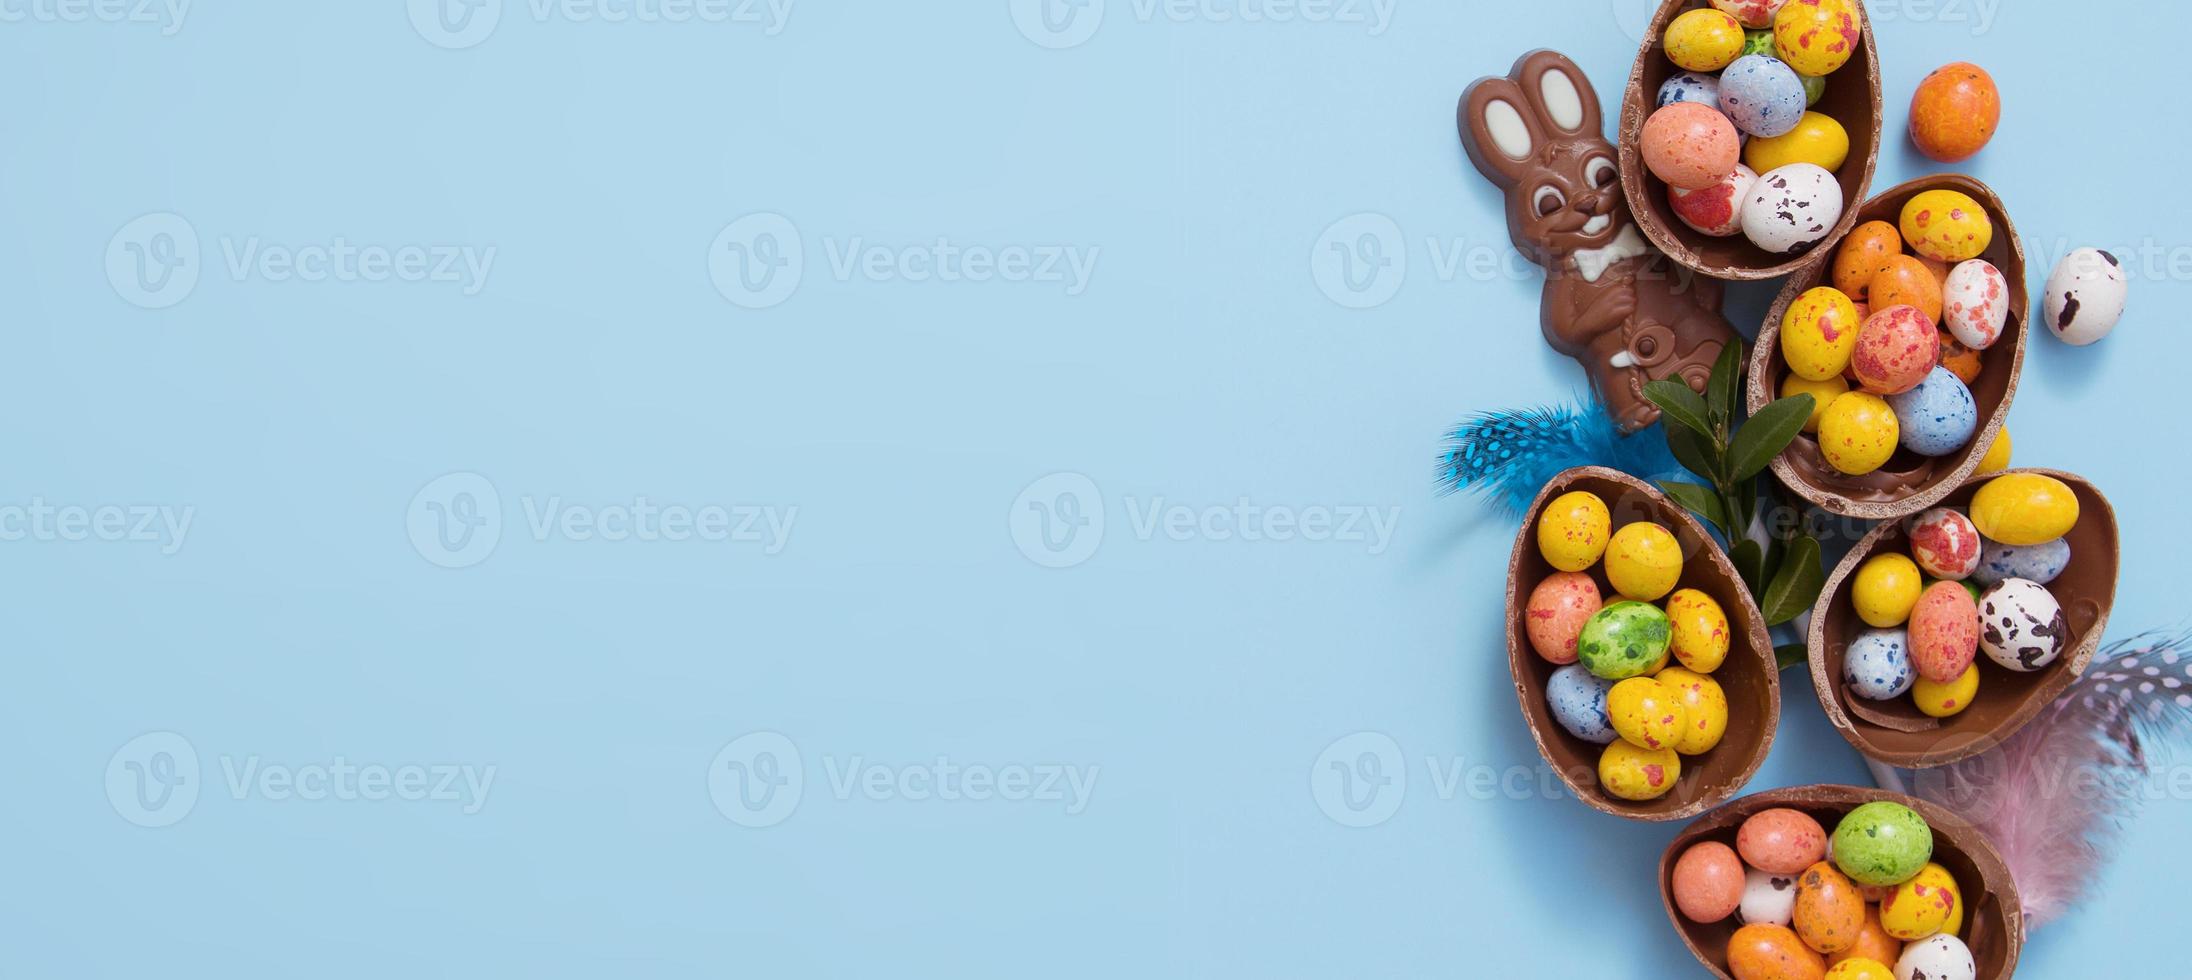 bannière concept de chasse de pâques avec des œufs en chocolat à plat et un lapin sur fond bleu. vue d'en-haut photo